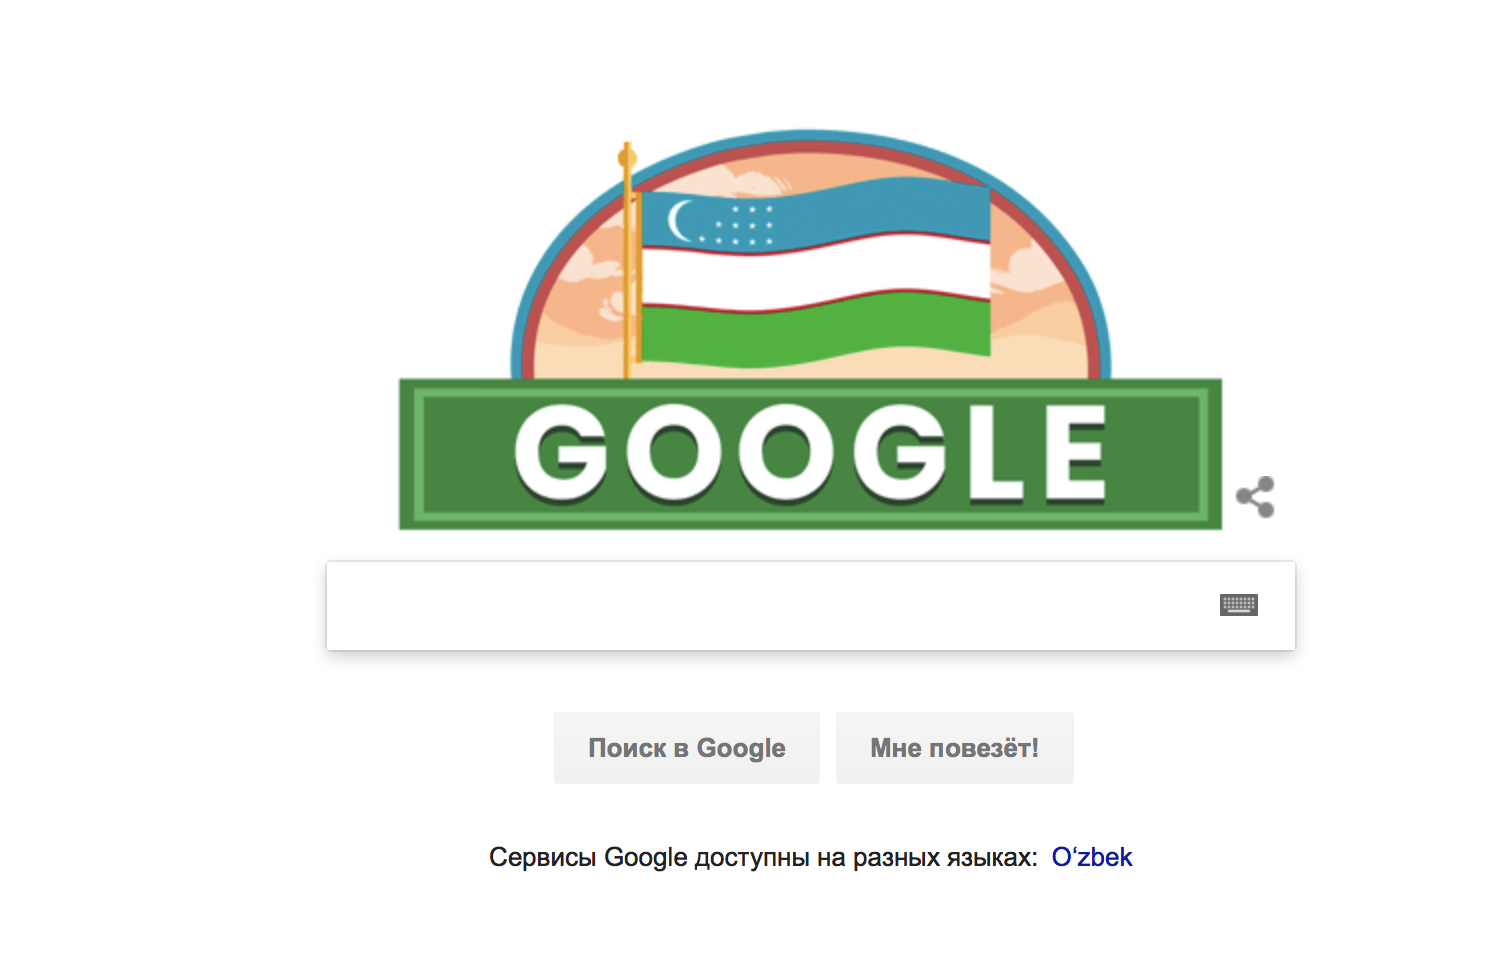 Google поменял главную страницу в честь Дня Независимости Узбекистана